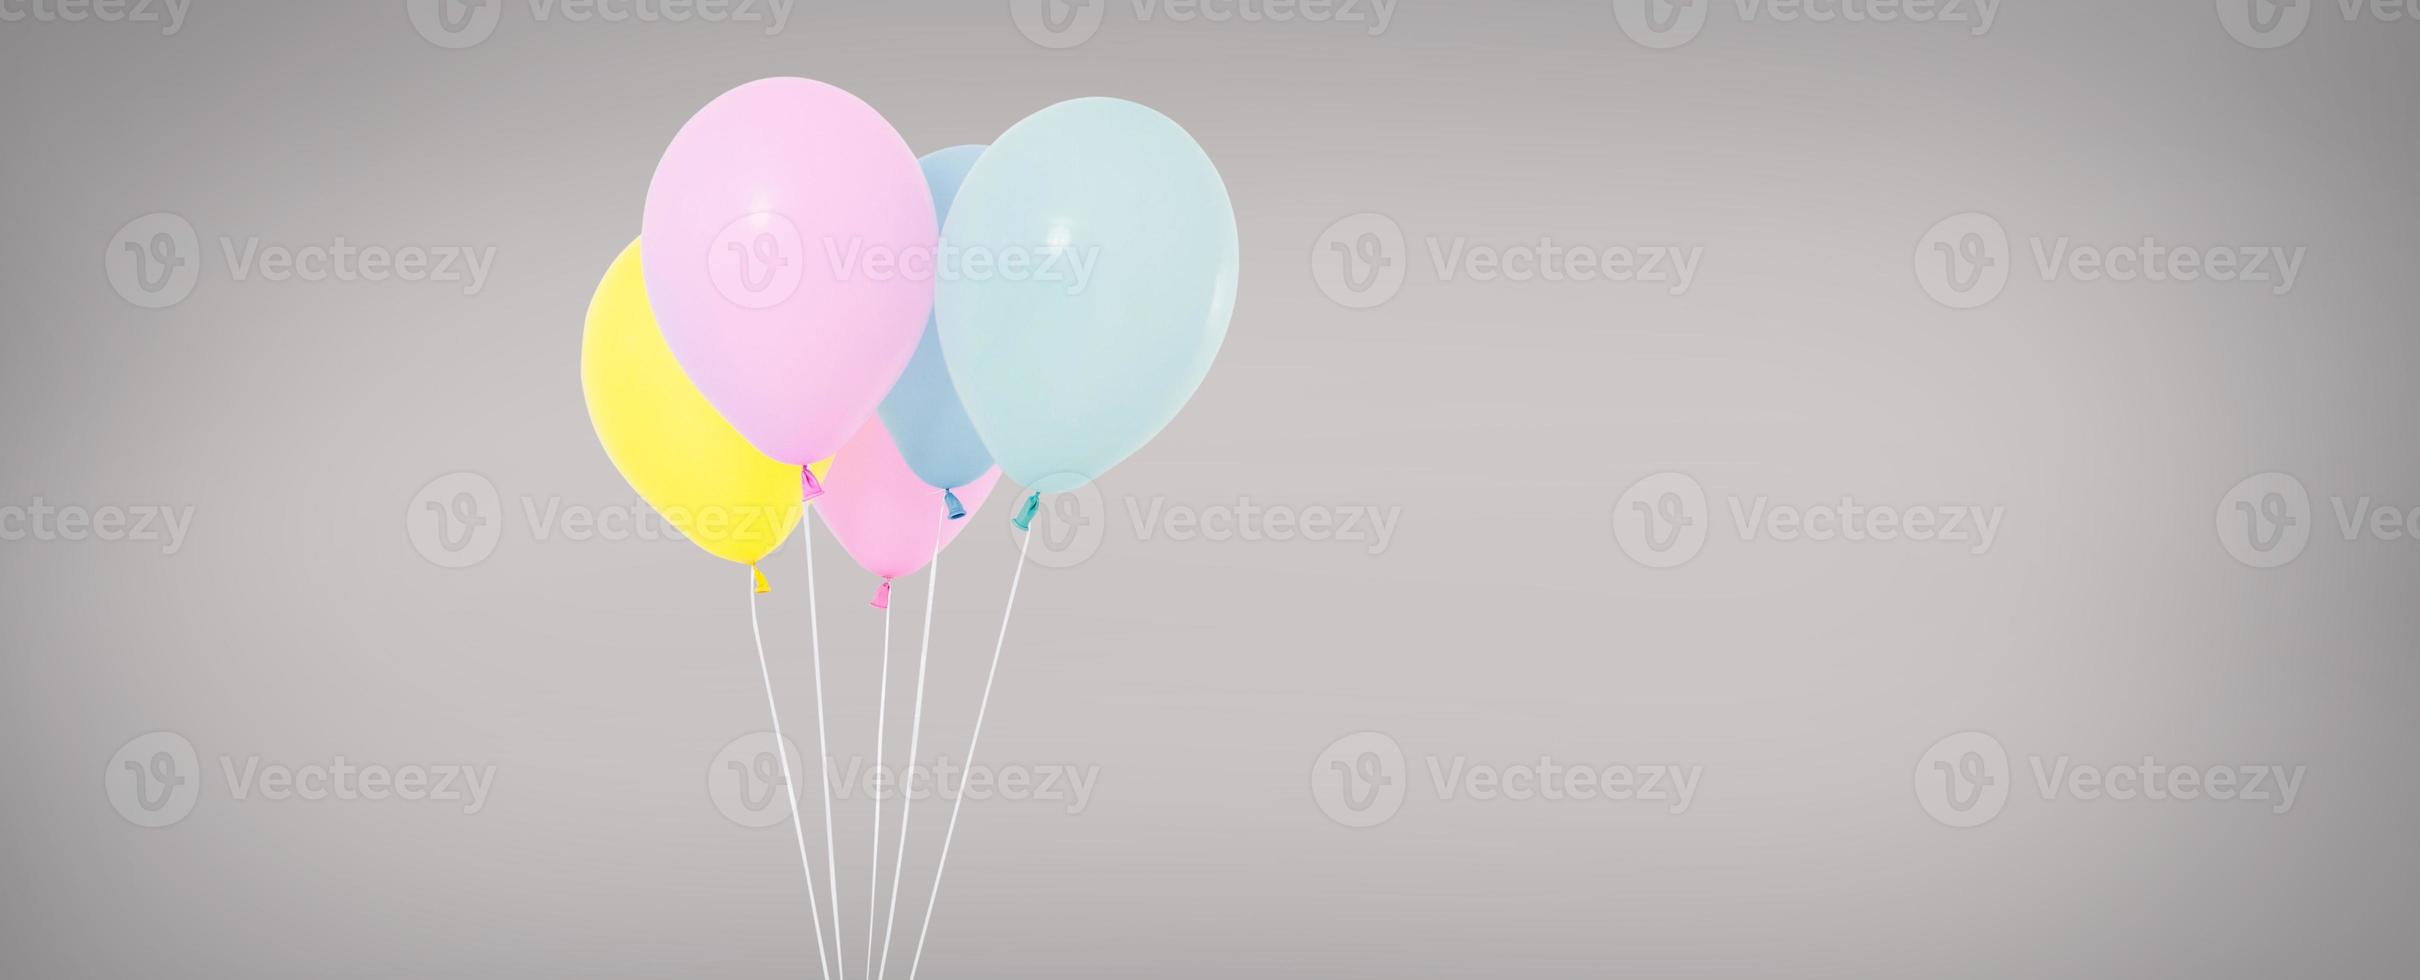 Feiertagsballons lokalisiert auf grauem Hintergrund, farbiger Ballon foto